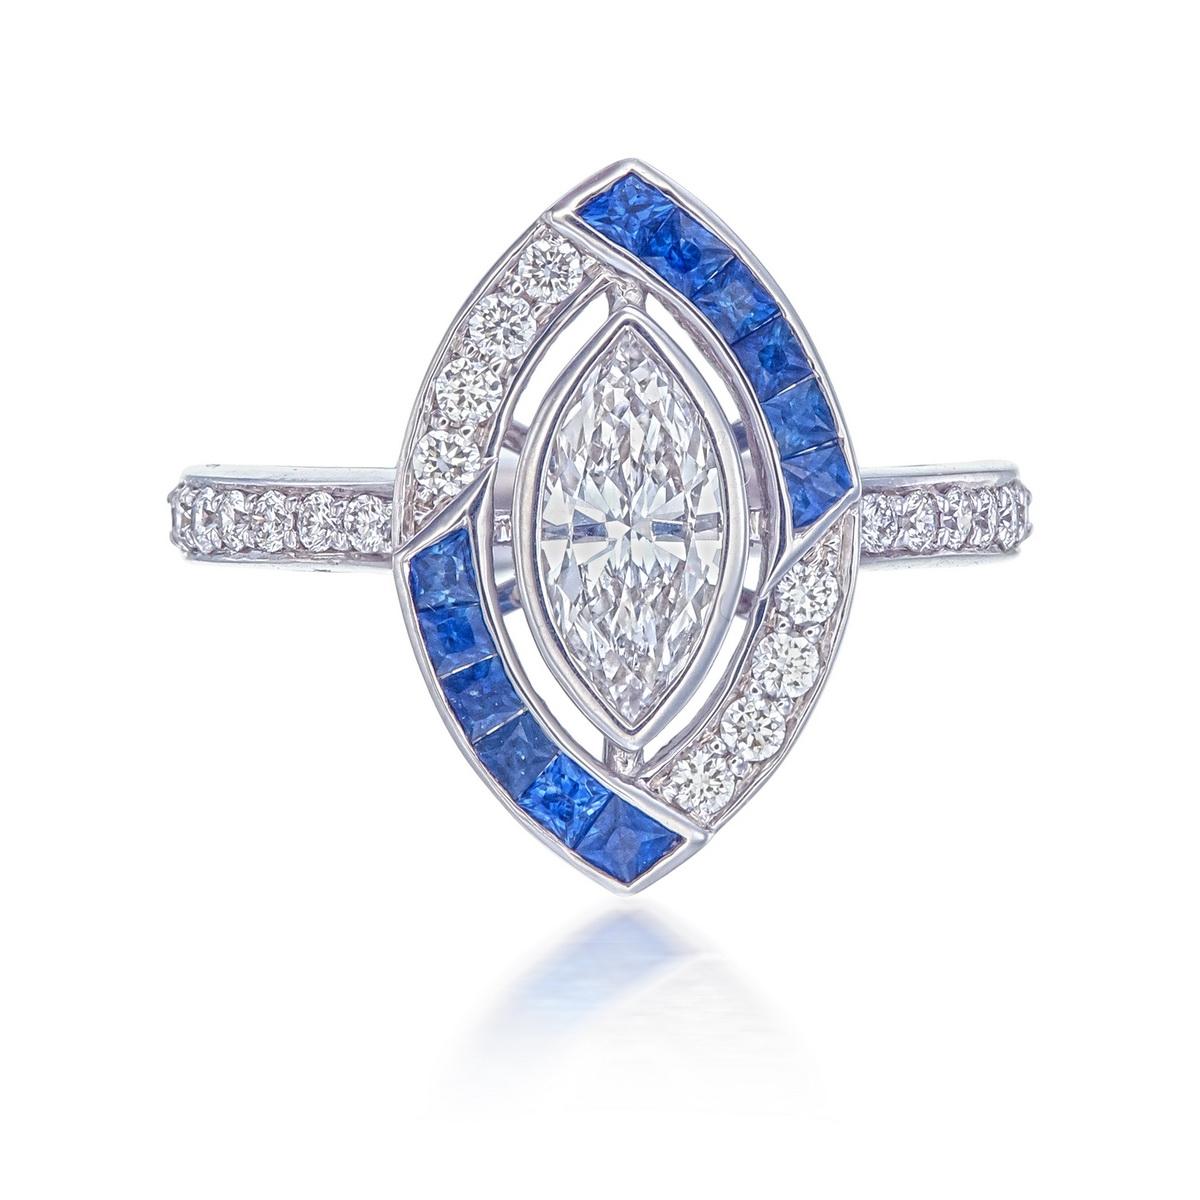 Ein brandneuer Ring mit Diamanten und blauem Saphir in 18 Karat Weißgold. Das Design dieses modernen Vintage-Rings wurde von Art-Déco-Themen inspiriert. 

Der Marquise-Diamant in der Mitte hat etwa 0,67 Karat und ist von der Farbe H-I und der